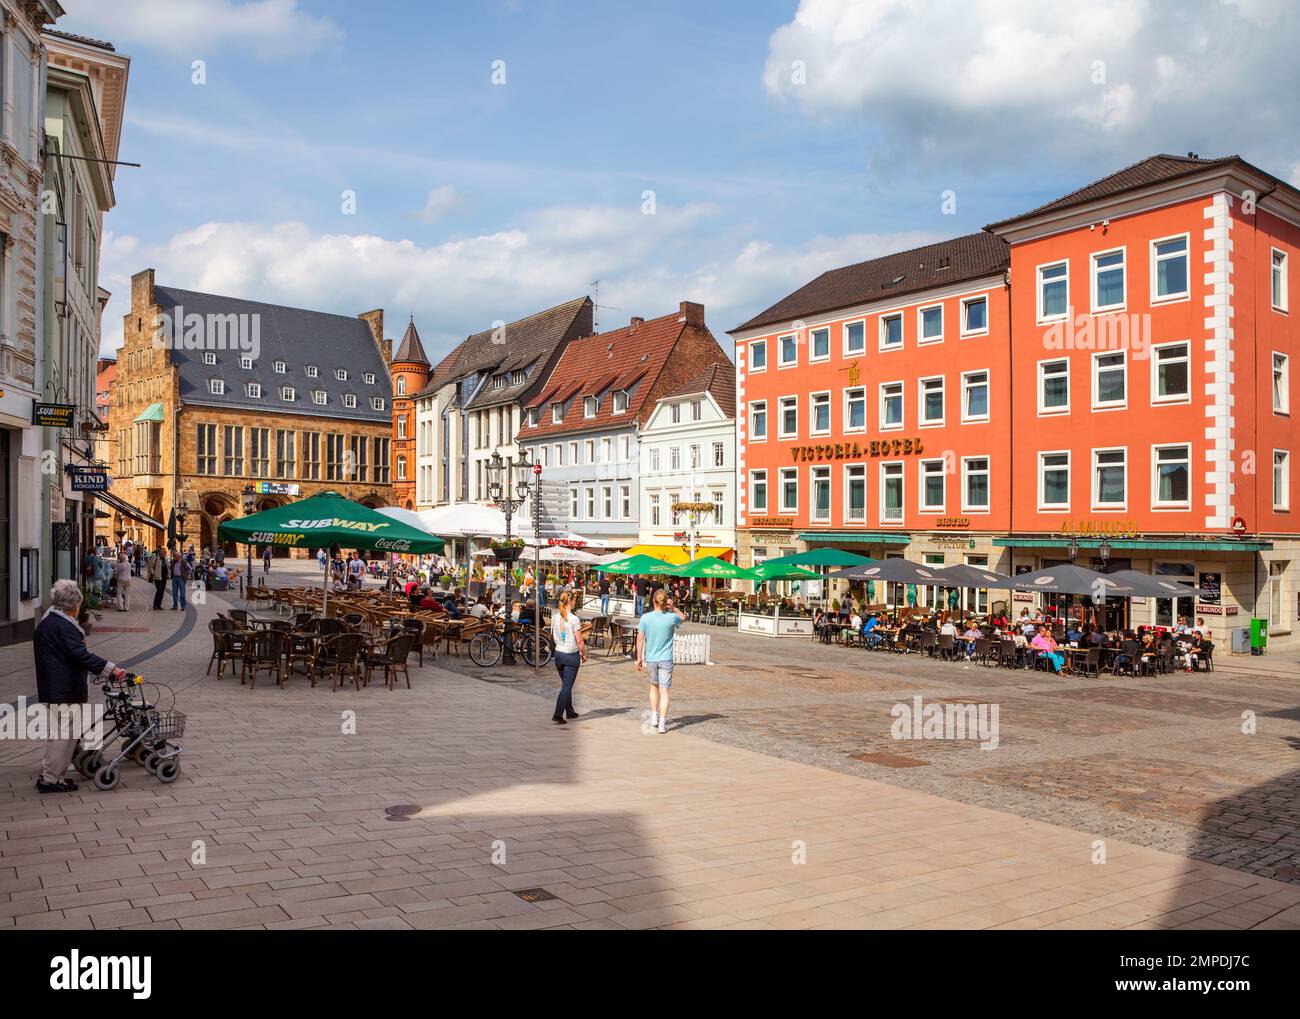 Market place, Minden, North Rhine-Westphalia, Germany Stock Photo